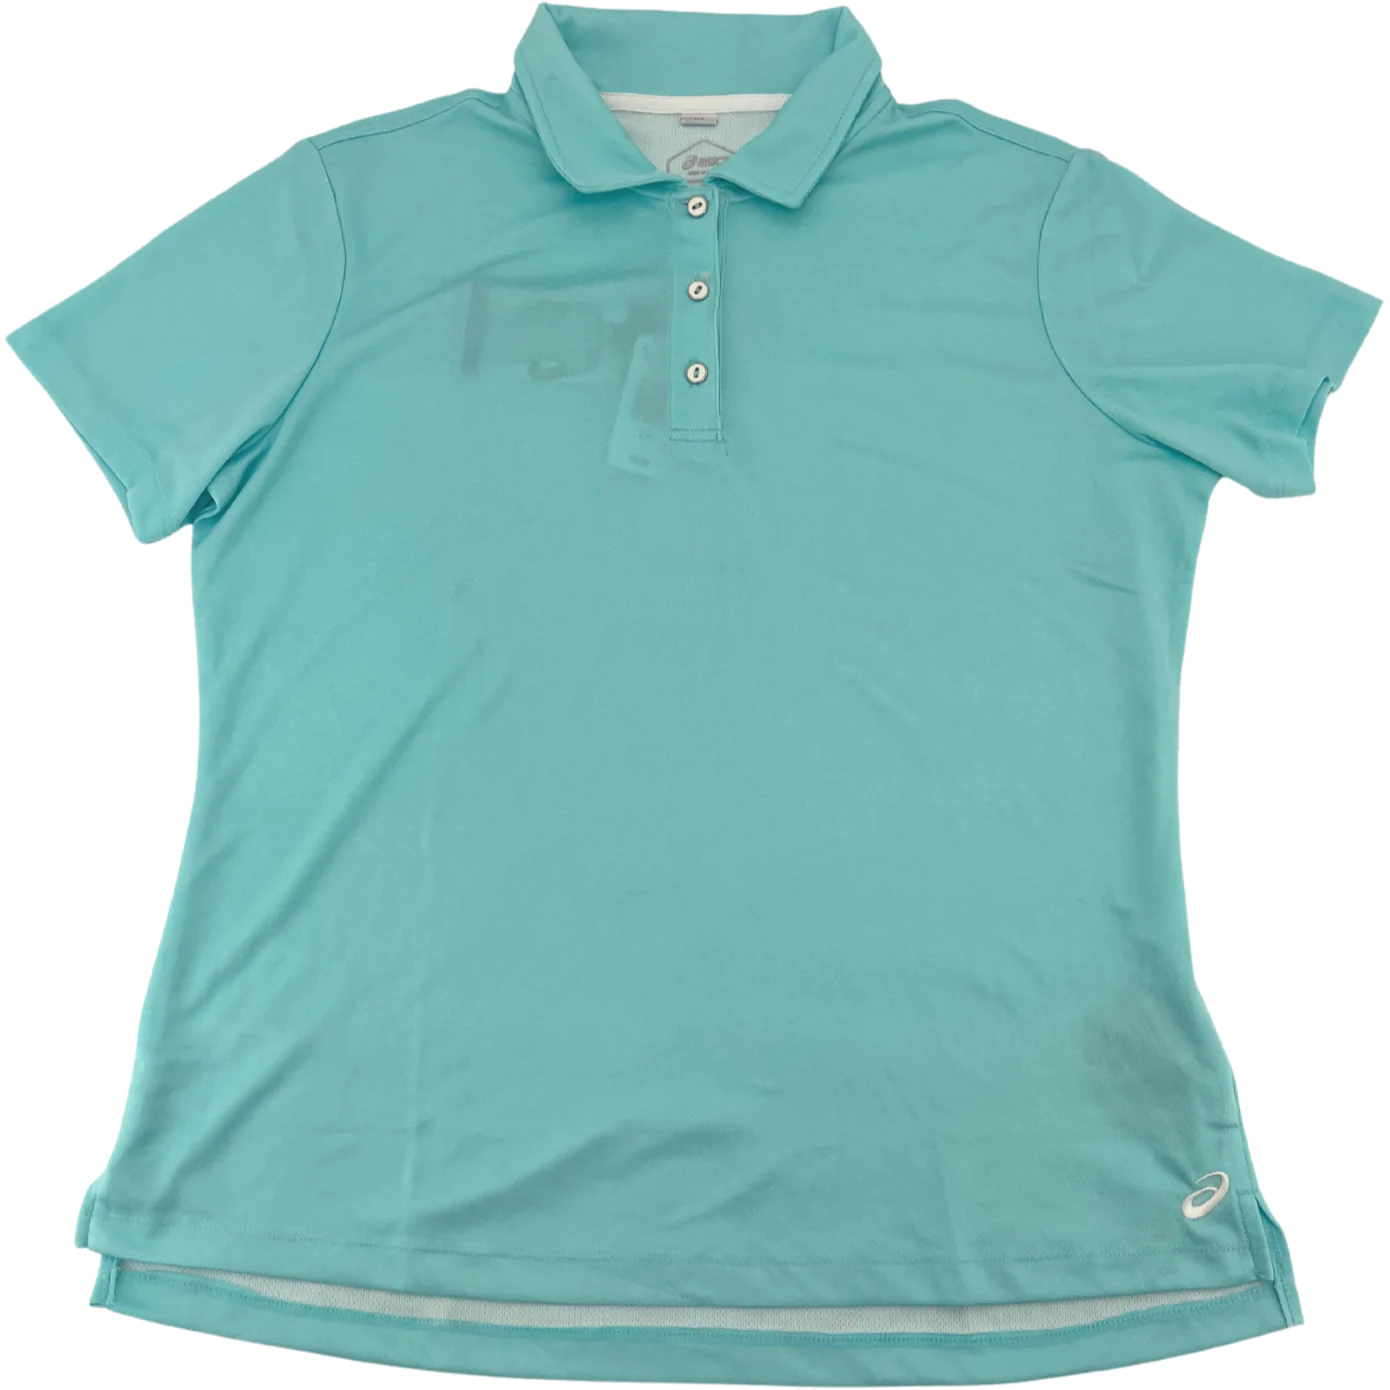 Asics Women's Golf Shirt / Light Blue / Size Large